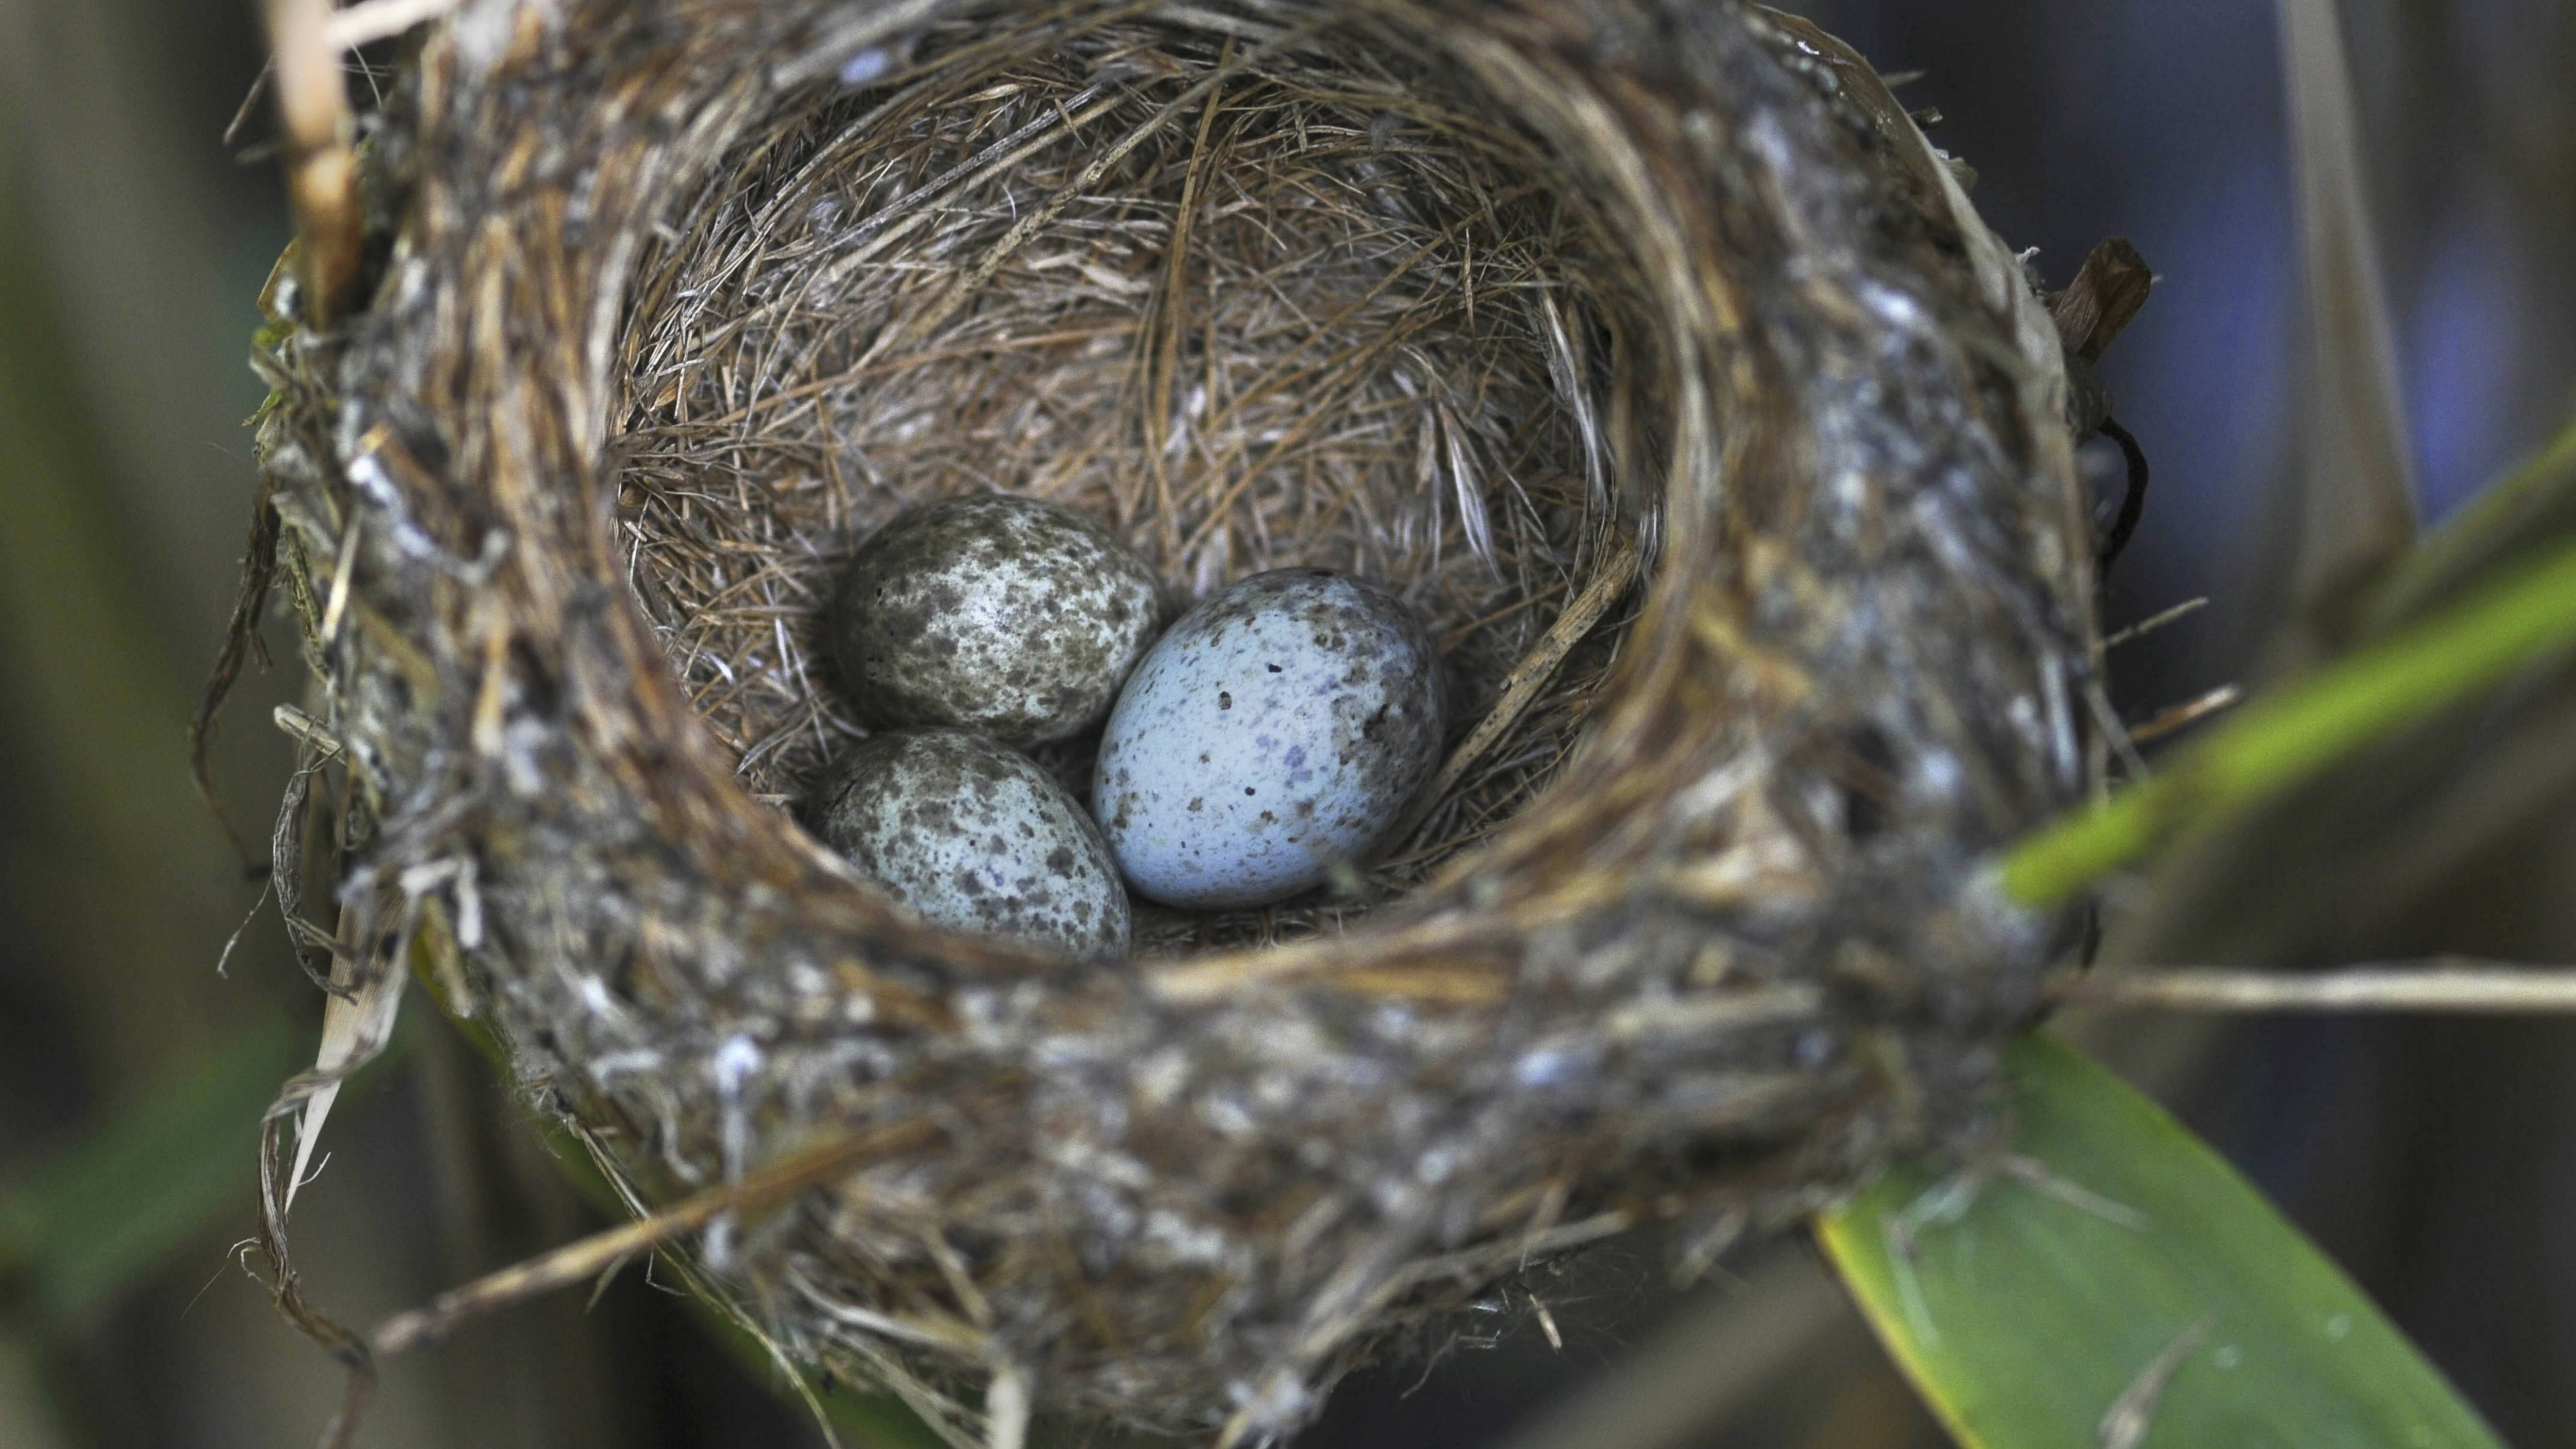 Schwindel-Ei: Kuckucke legen ihre Eier anderen Vogelarten ins Nest. Besonders bei Arten, deren Eier aussehen, wie ihre eigenen, wie zum Beispiel beim Teichrohrsaenger.